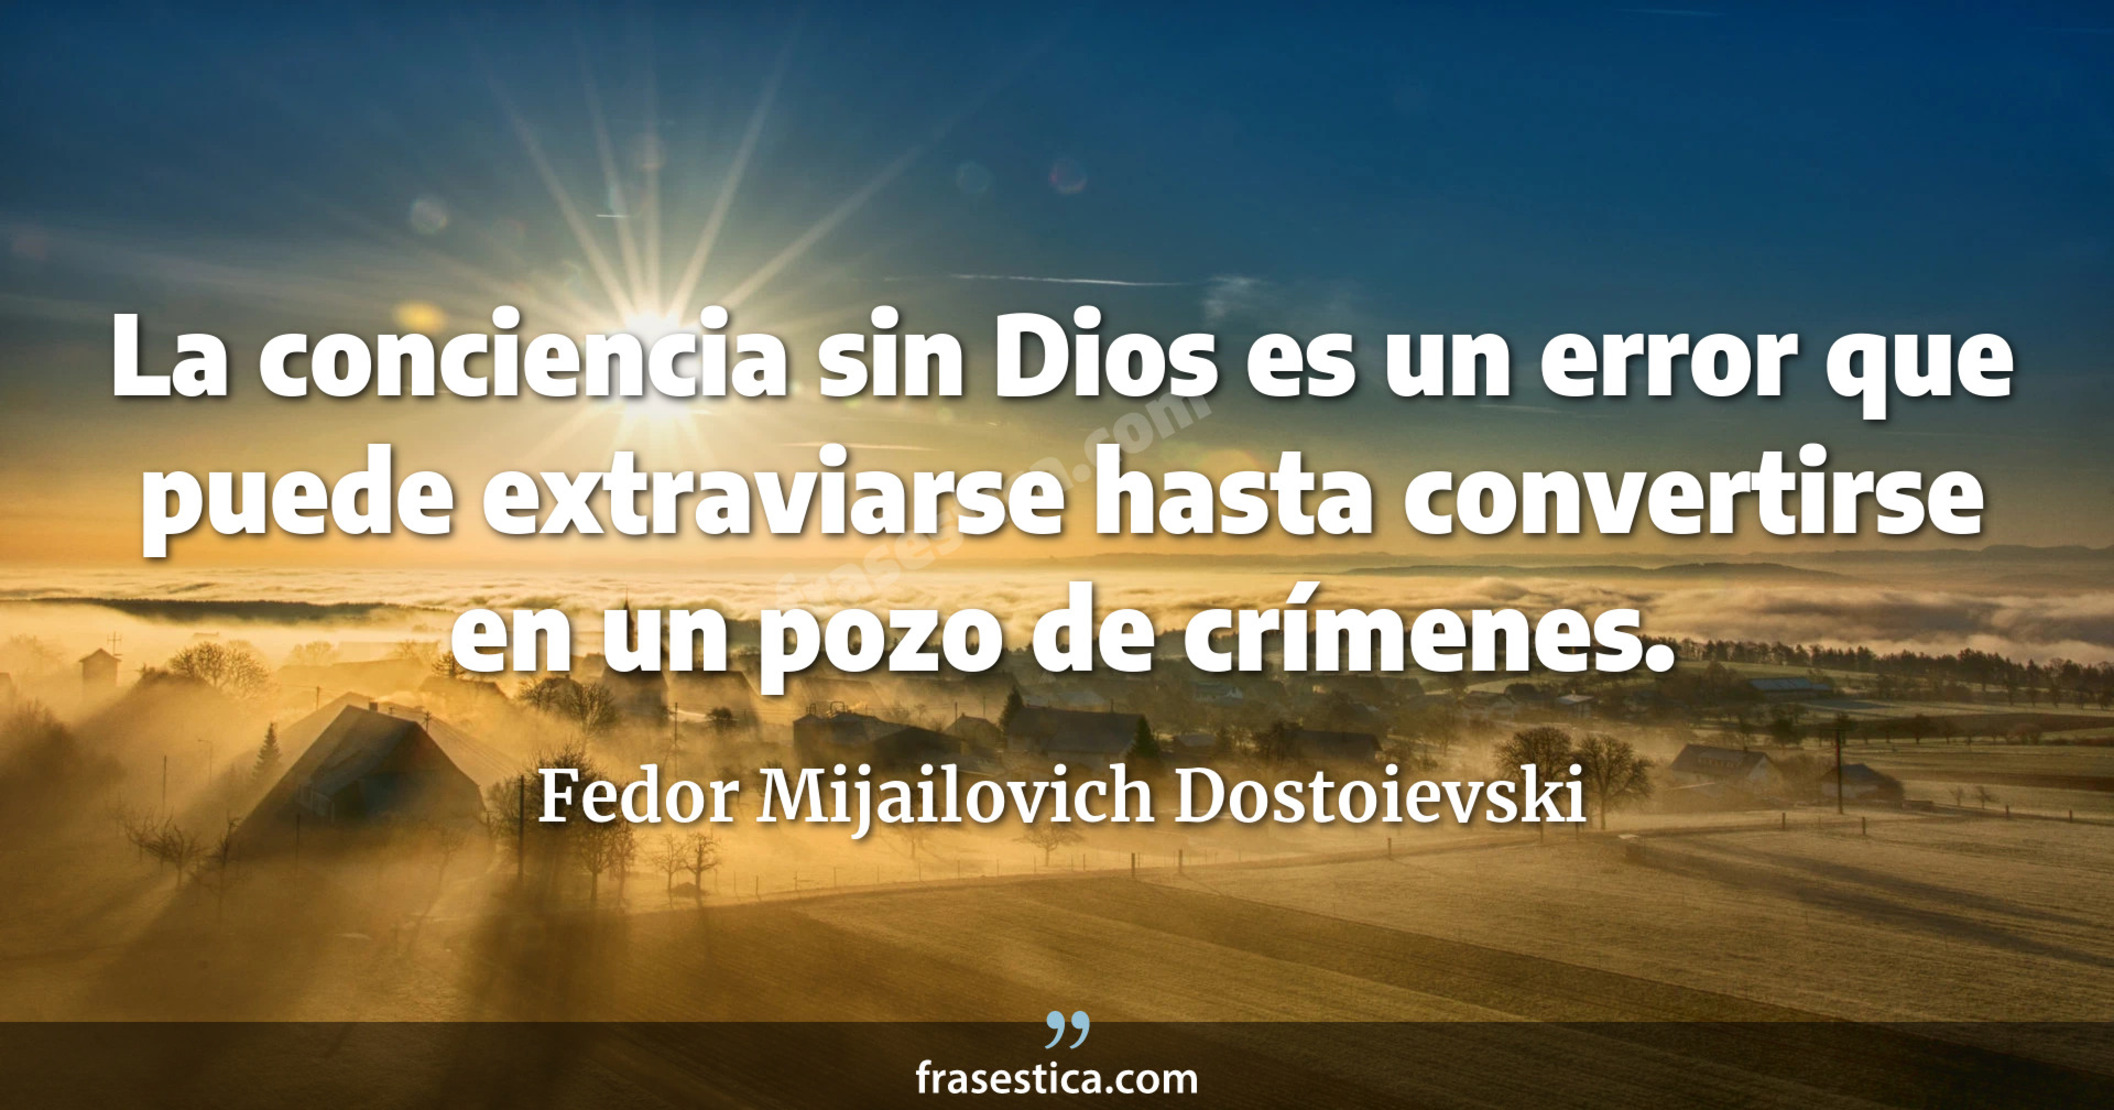 La conciencia sin Dios es un error que puede extraviarse hasta convertirse en un pozo de crímenes. - Fedor Mijailovich Dostoievski